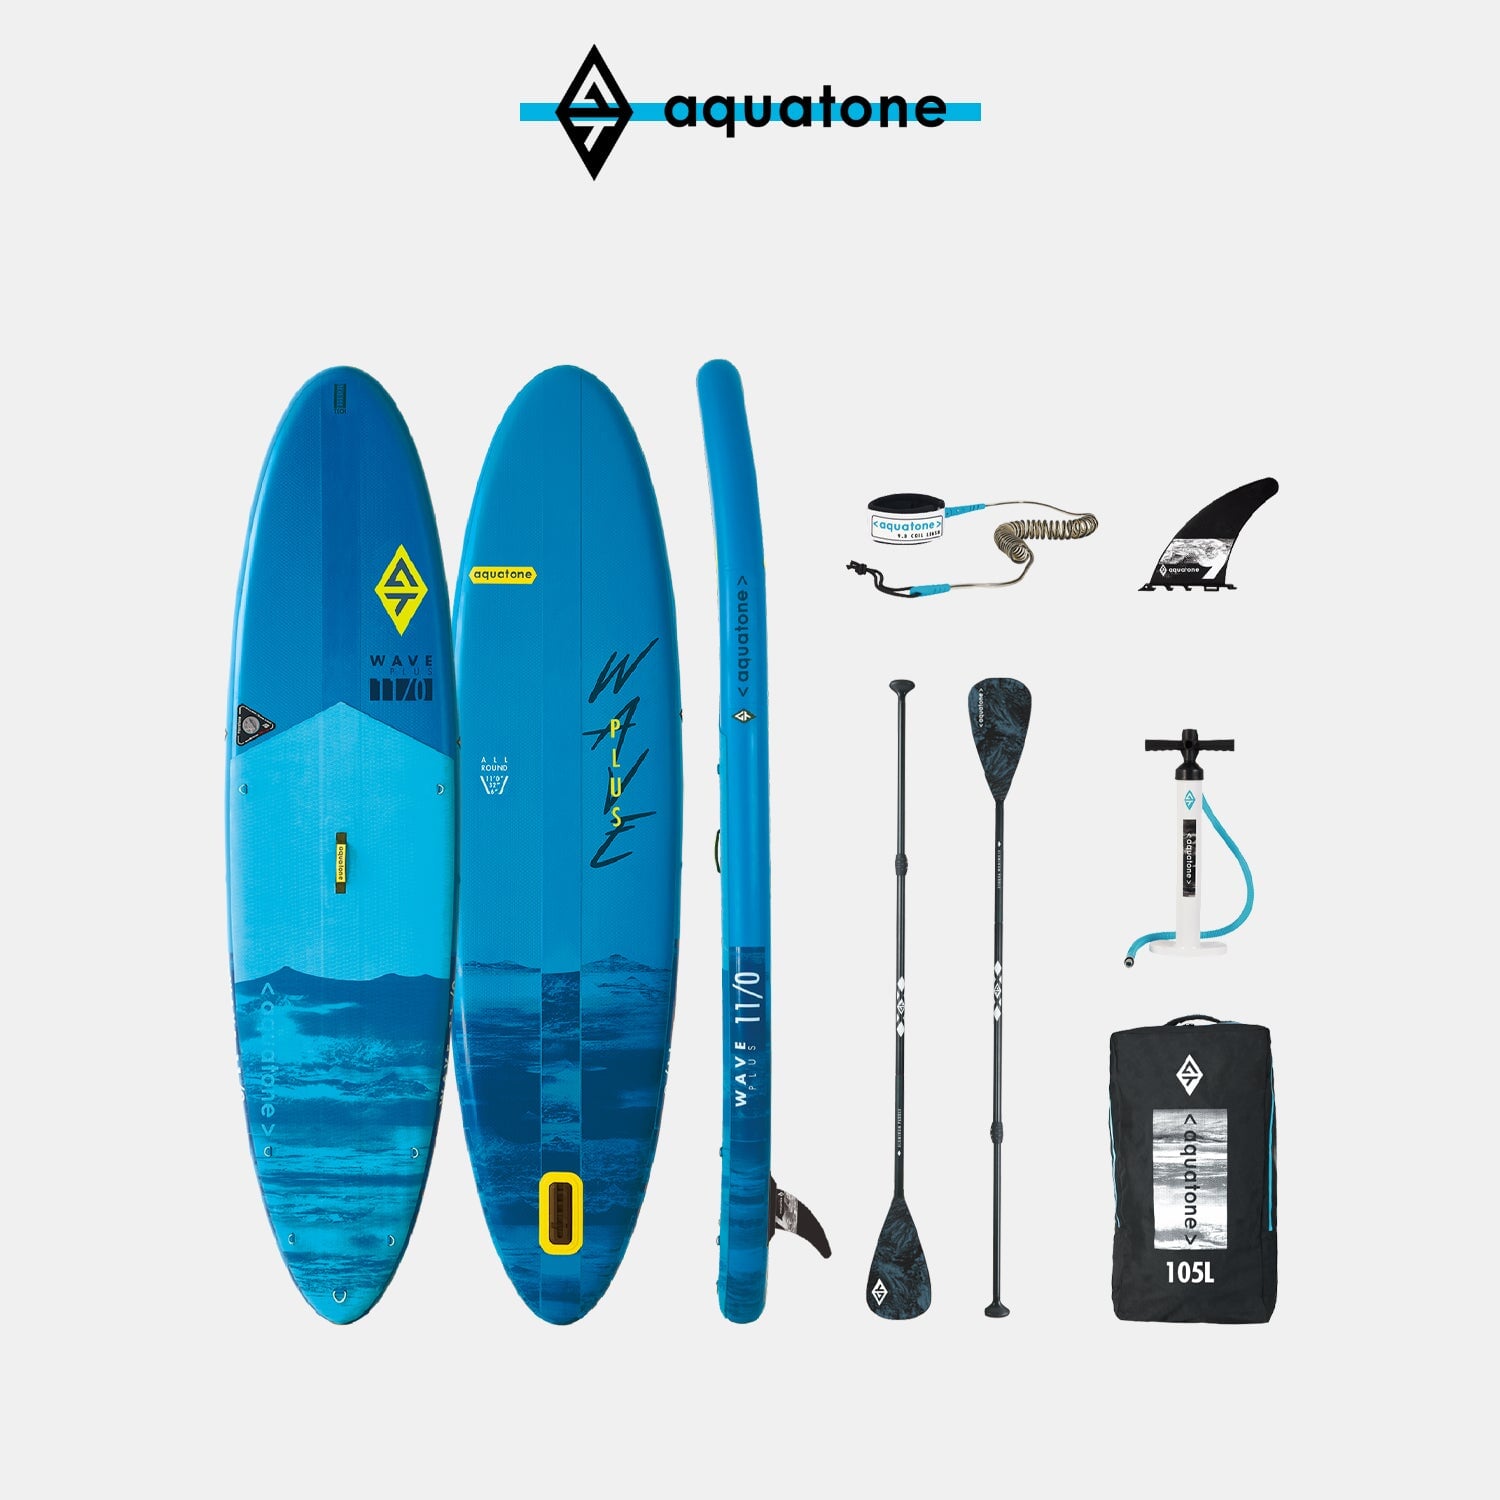 AQUATONE Wave Plus Allround 11'0'' iSUP Set, 335x81x15cm, Volumen 310L